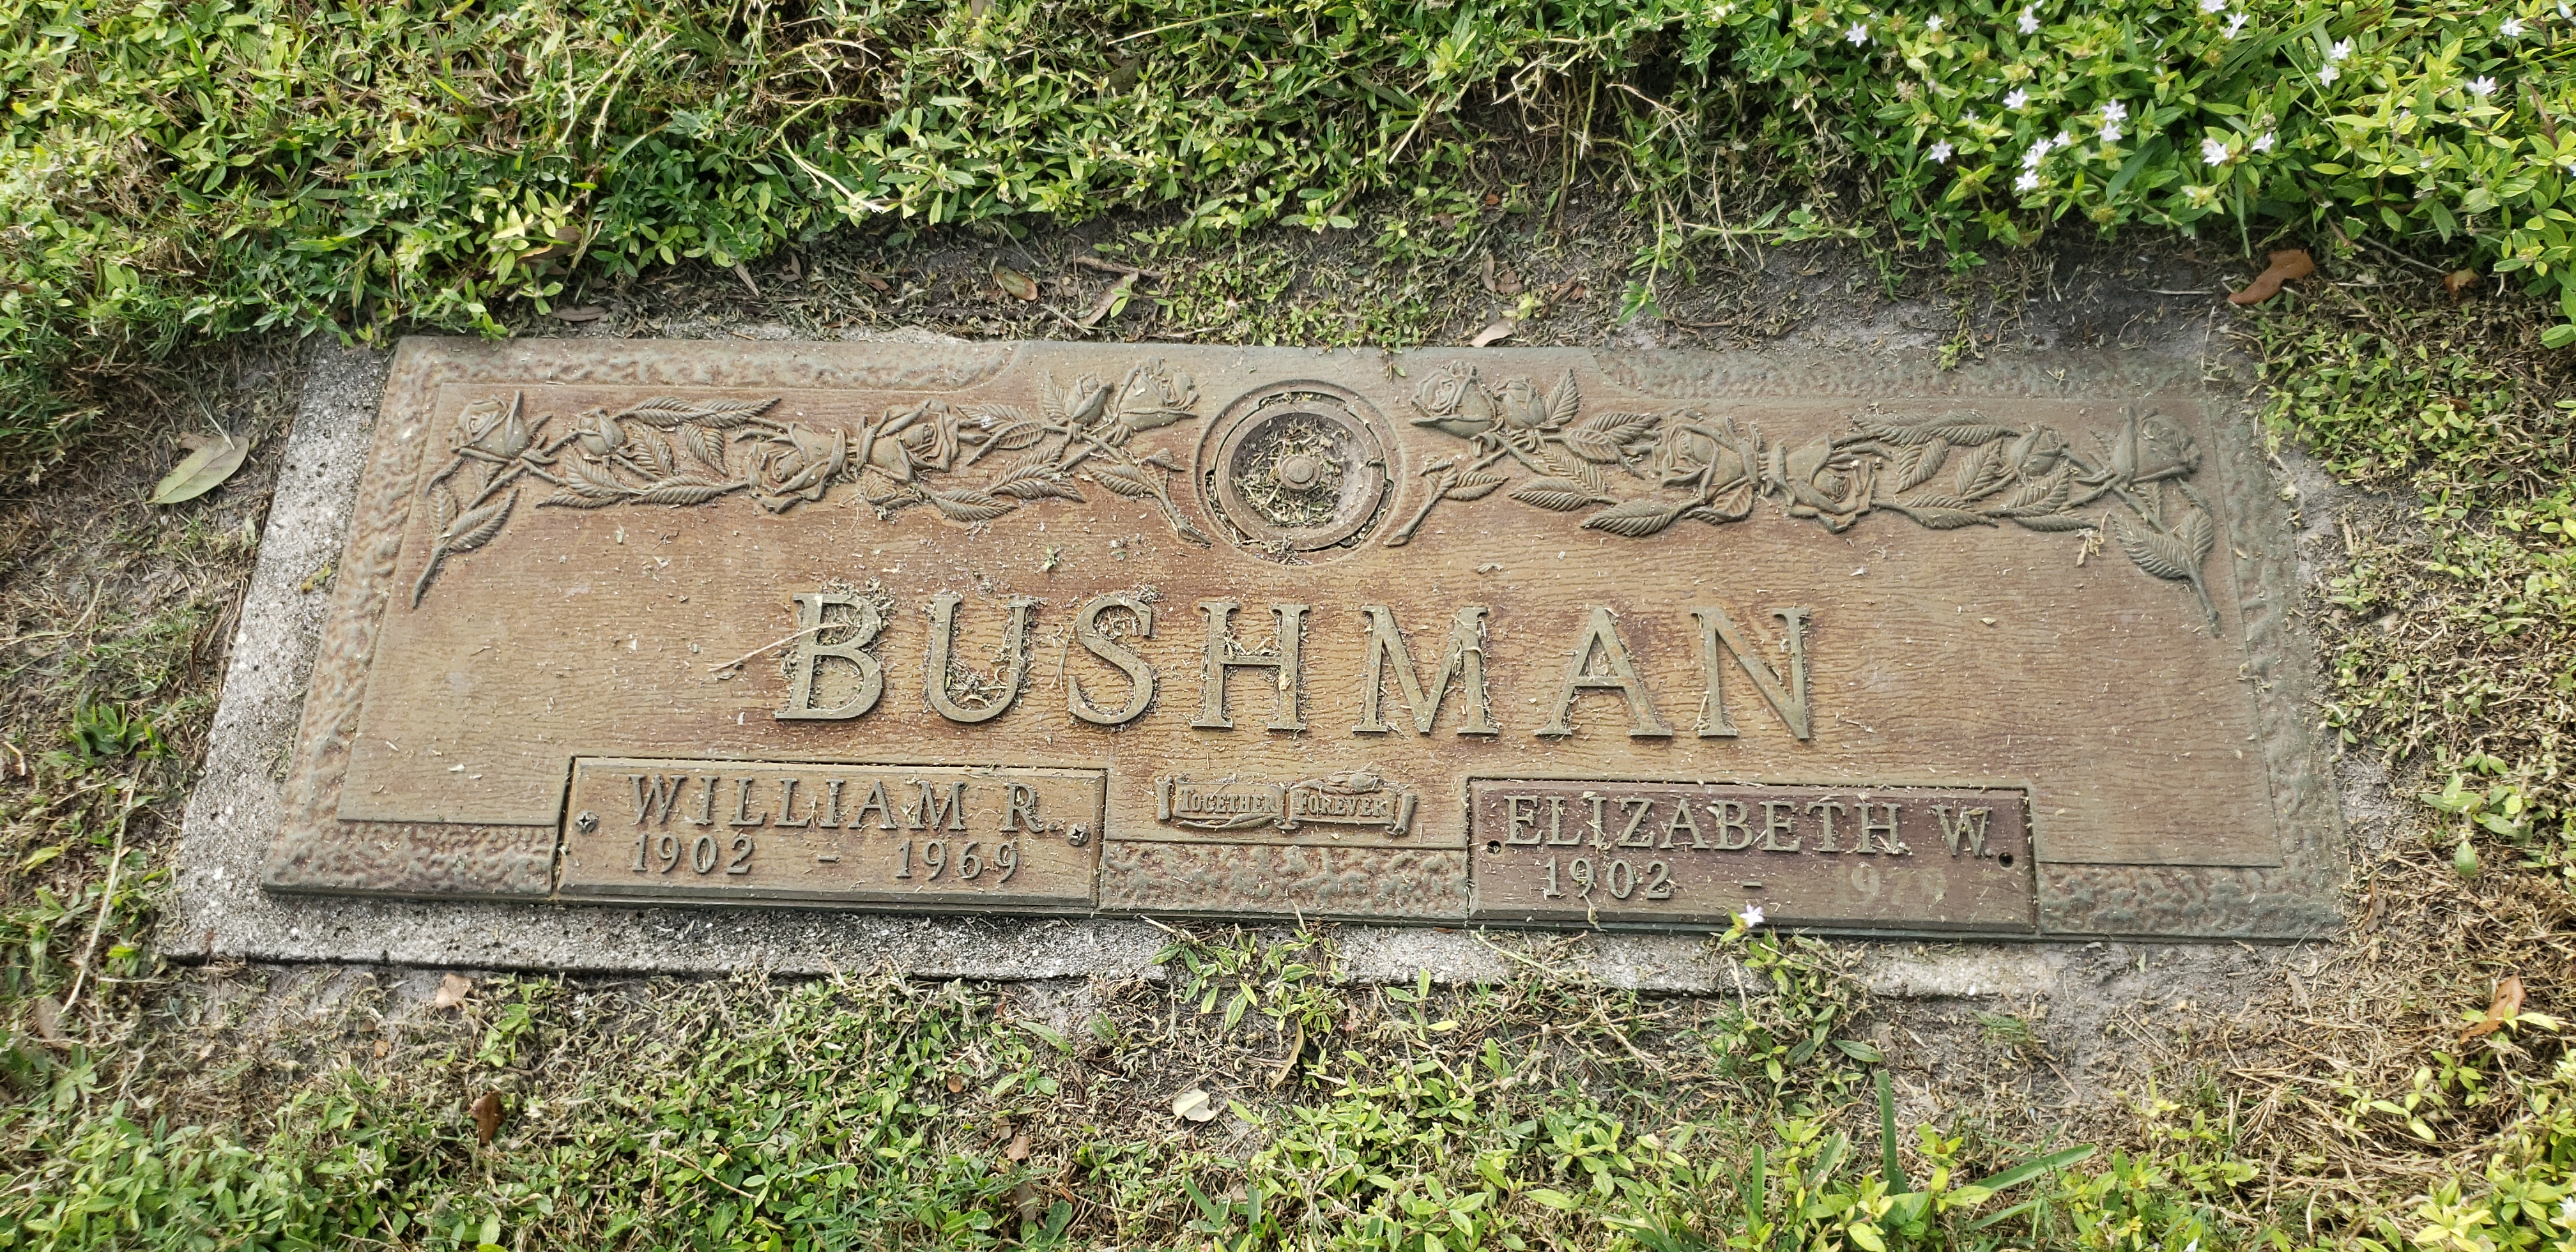 Elizabeth W Bushman